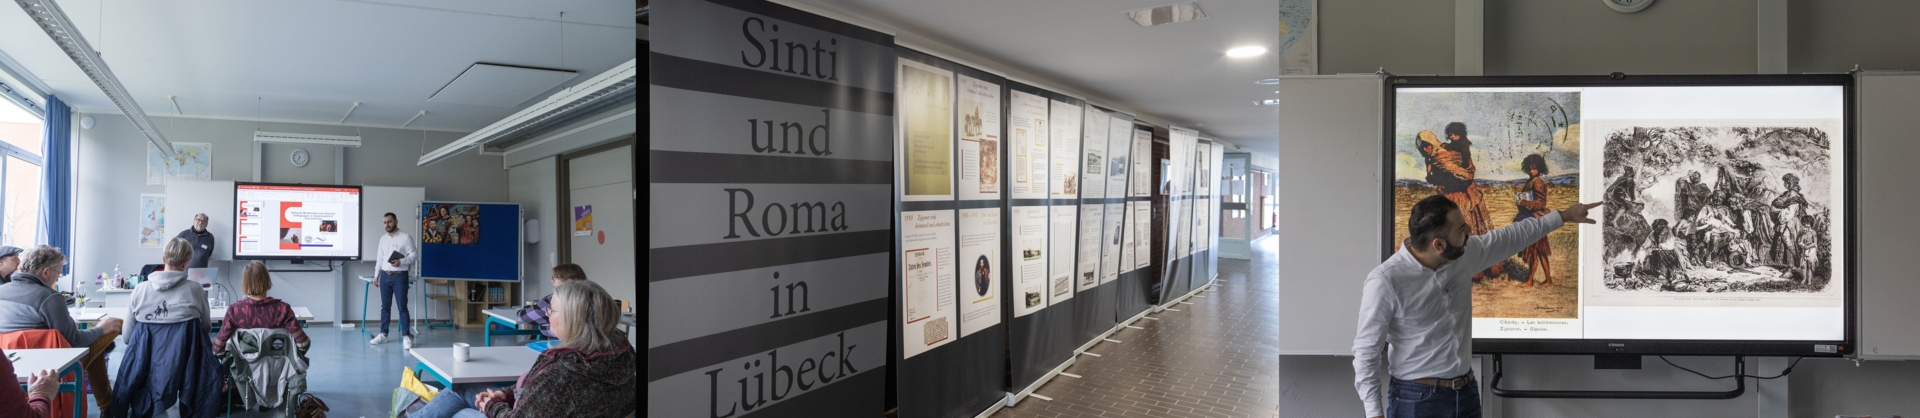 Impressionen vom Workshop 'Zerstörte Vielfalt - Sinti und Roma - Diskriminierung erkennen und handeln' und der Ausstellung 'Sinti und Roma in Lübeck' © Anja Hagge